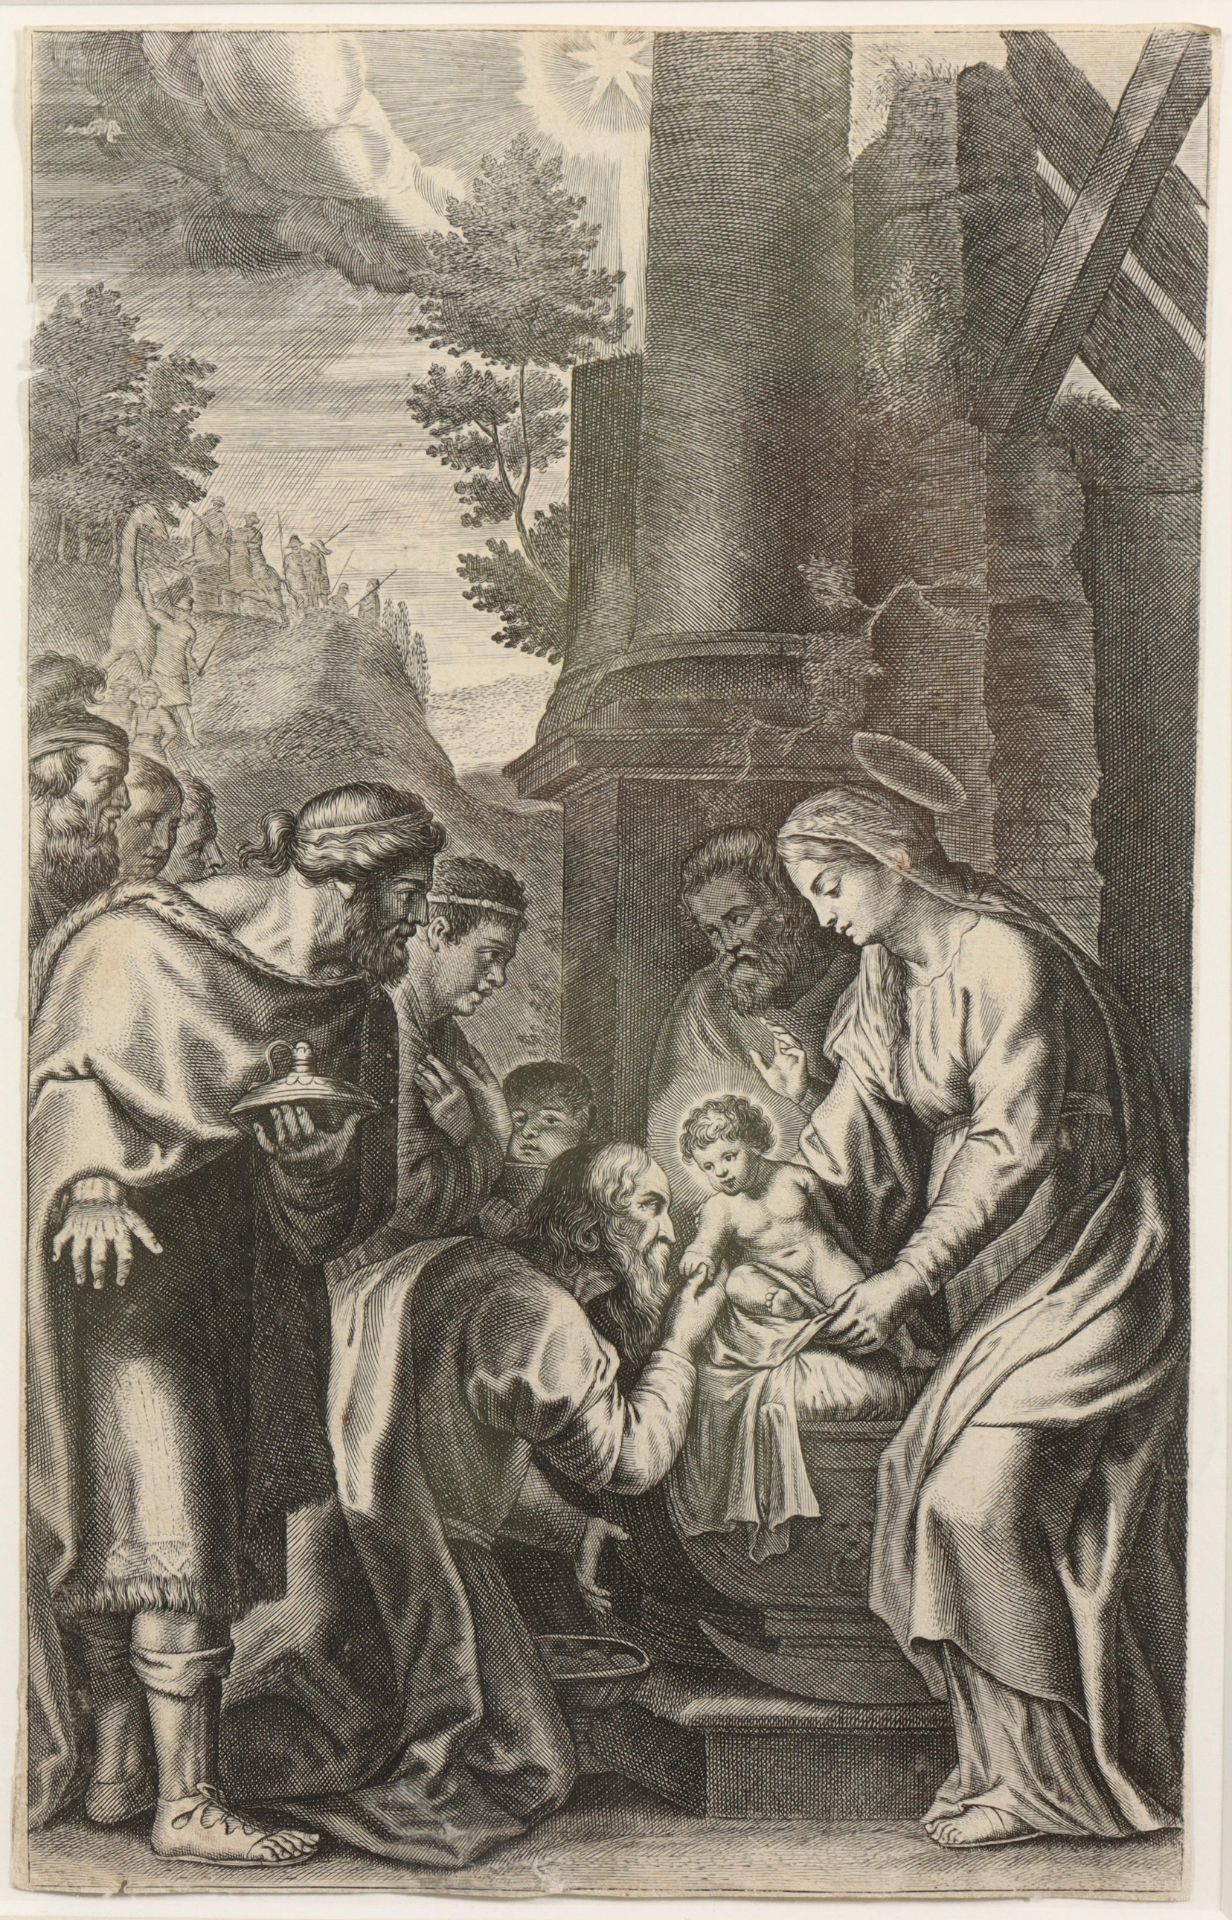 Mogelijk Theodor Galle naar Peter Paul Rubens, ca. 1610